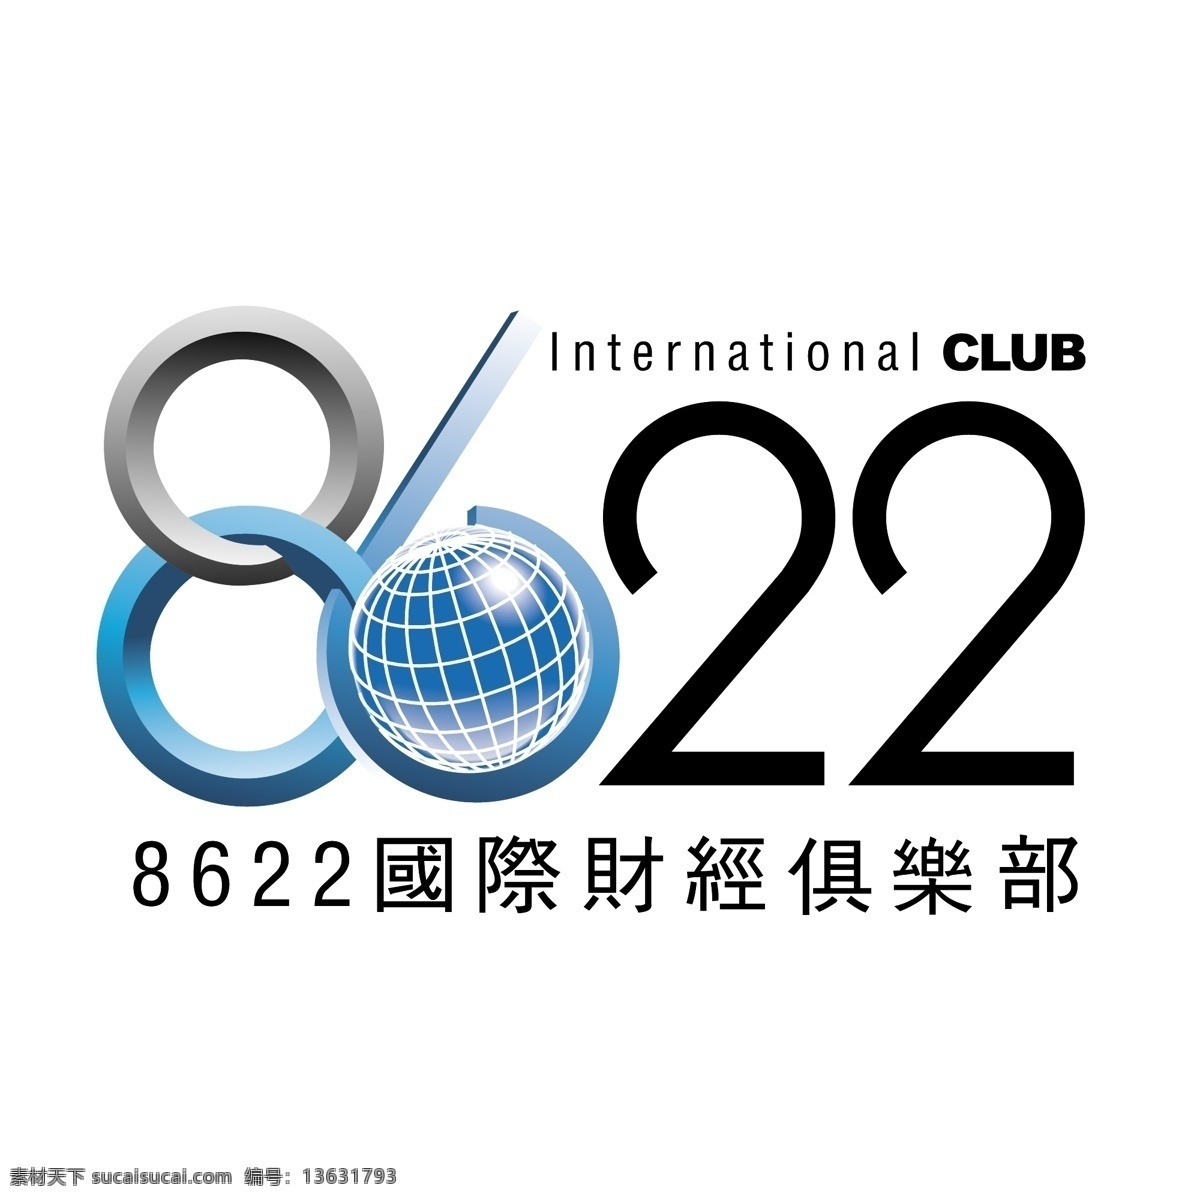 国际 财经 俱乐部 logo 标识 标志 蓝色logo 立体logo 图形设计 字体设计 矢量图